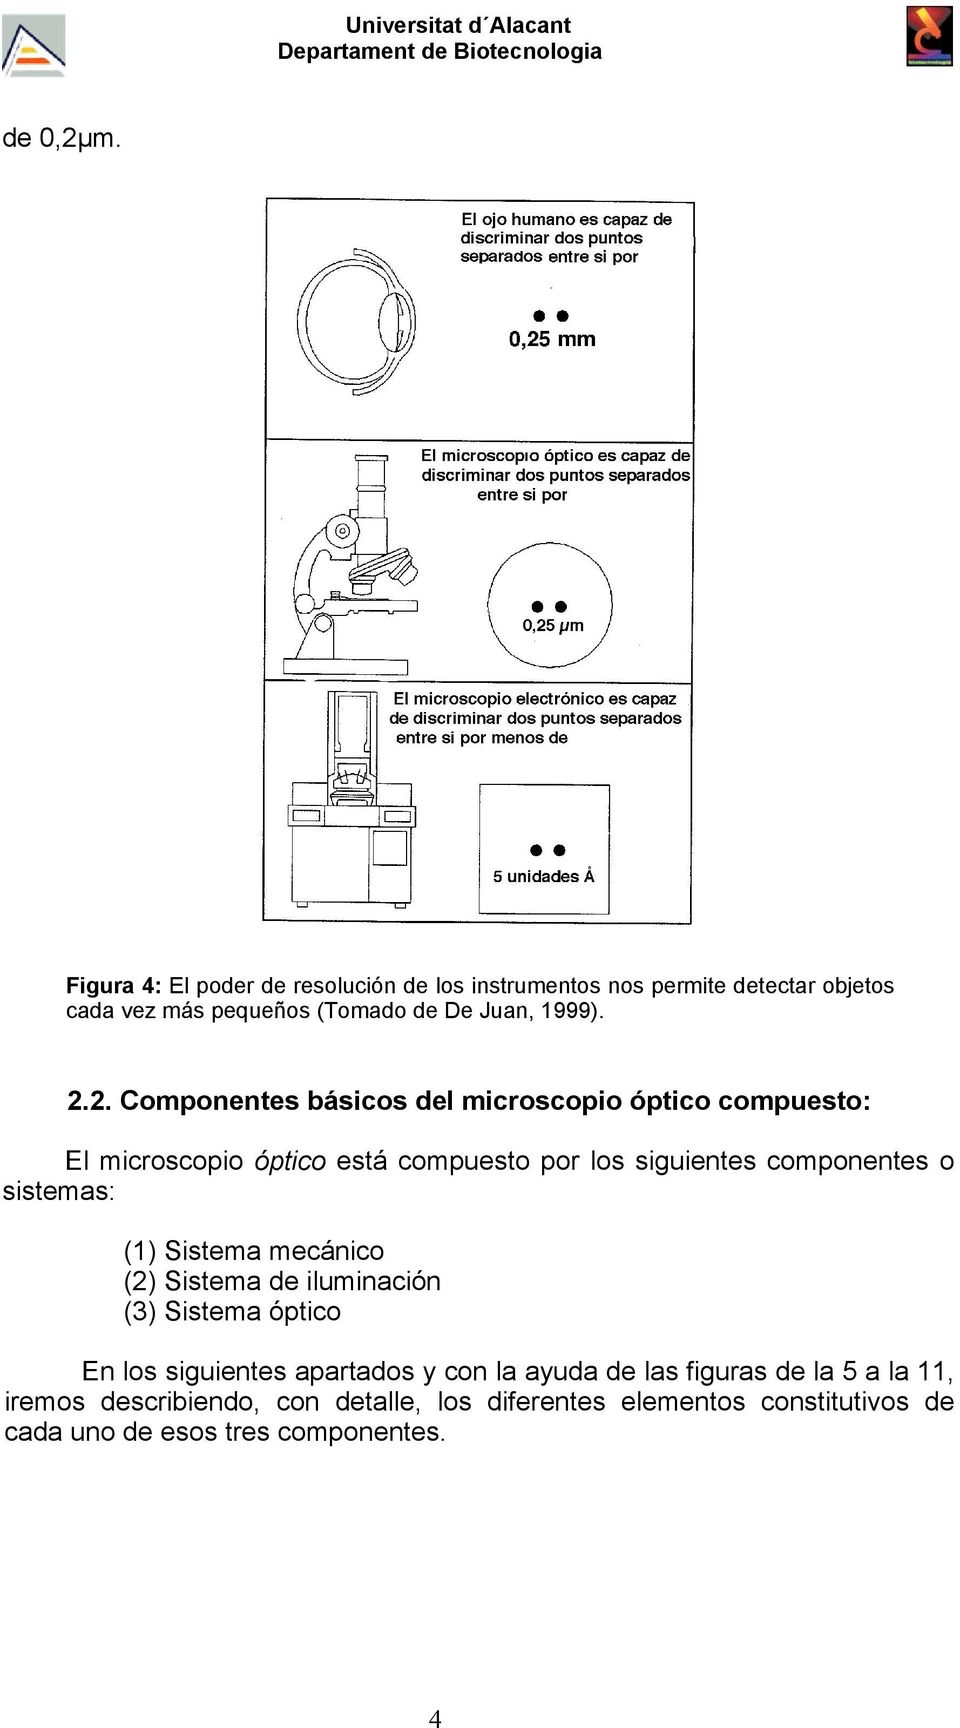 2. Componentes básicos del microscopio óptico compuesto: El microscopio óptico está compuesto por los siguientes componentes o